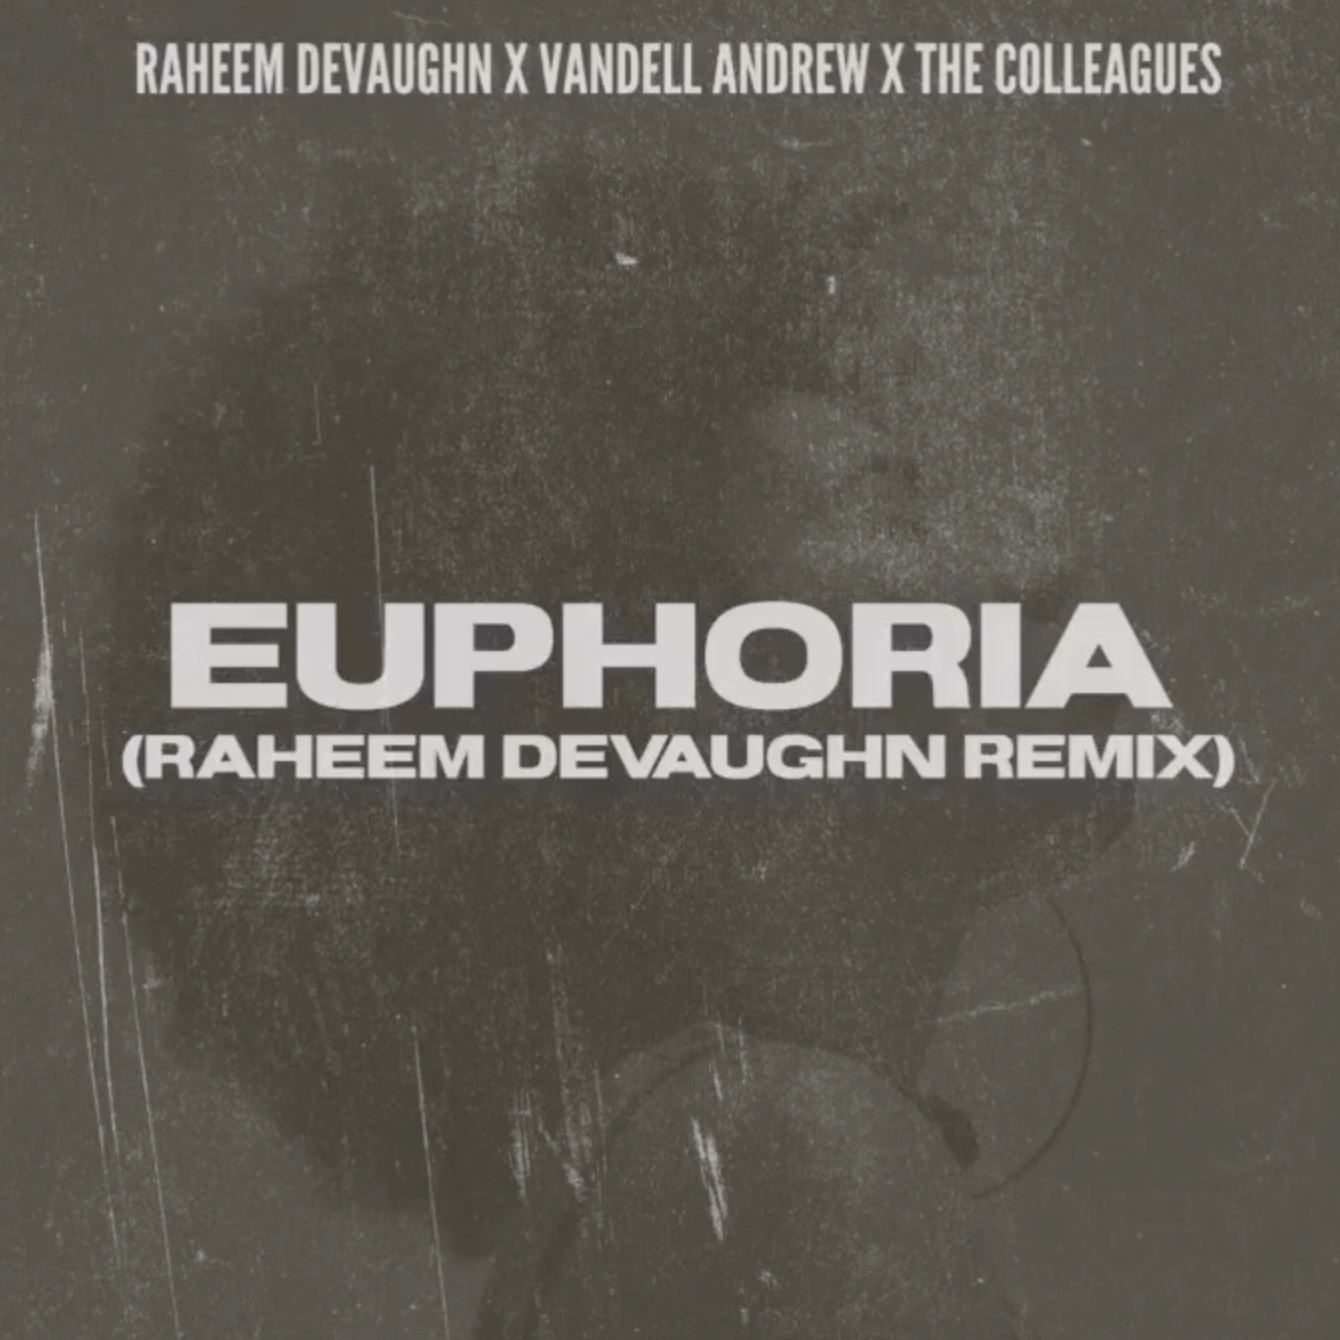 Vandell Andrew & The Colleagues – “Euphoria (Raheem DeVaughn Remix)”